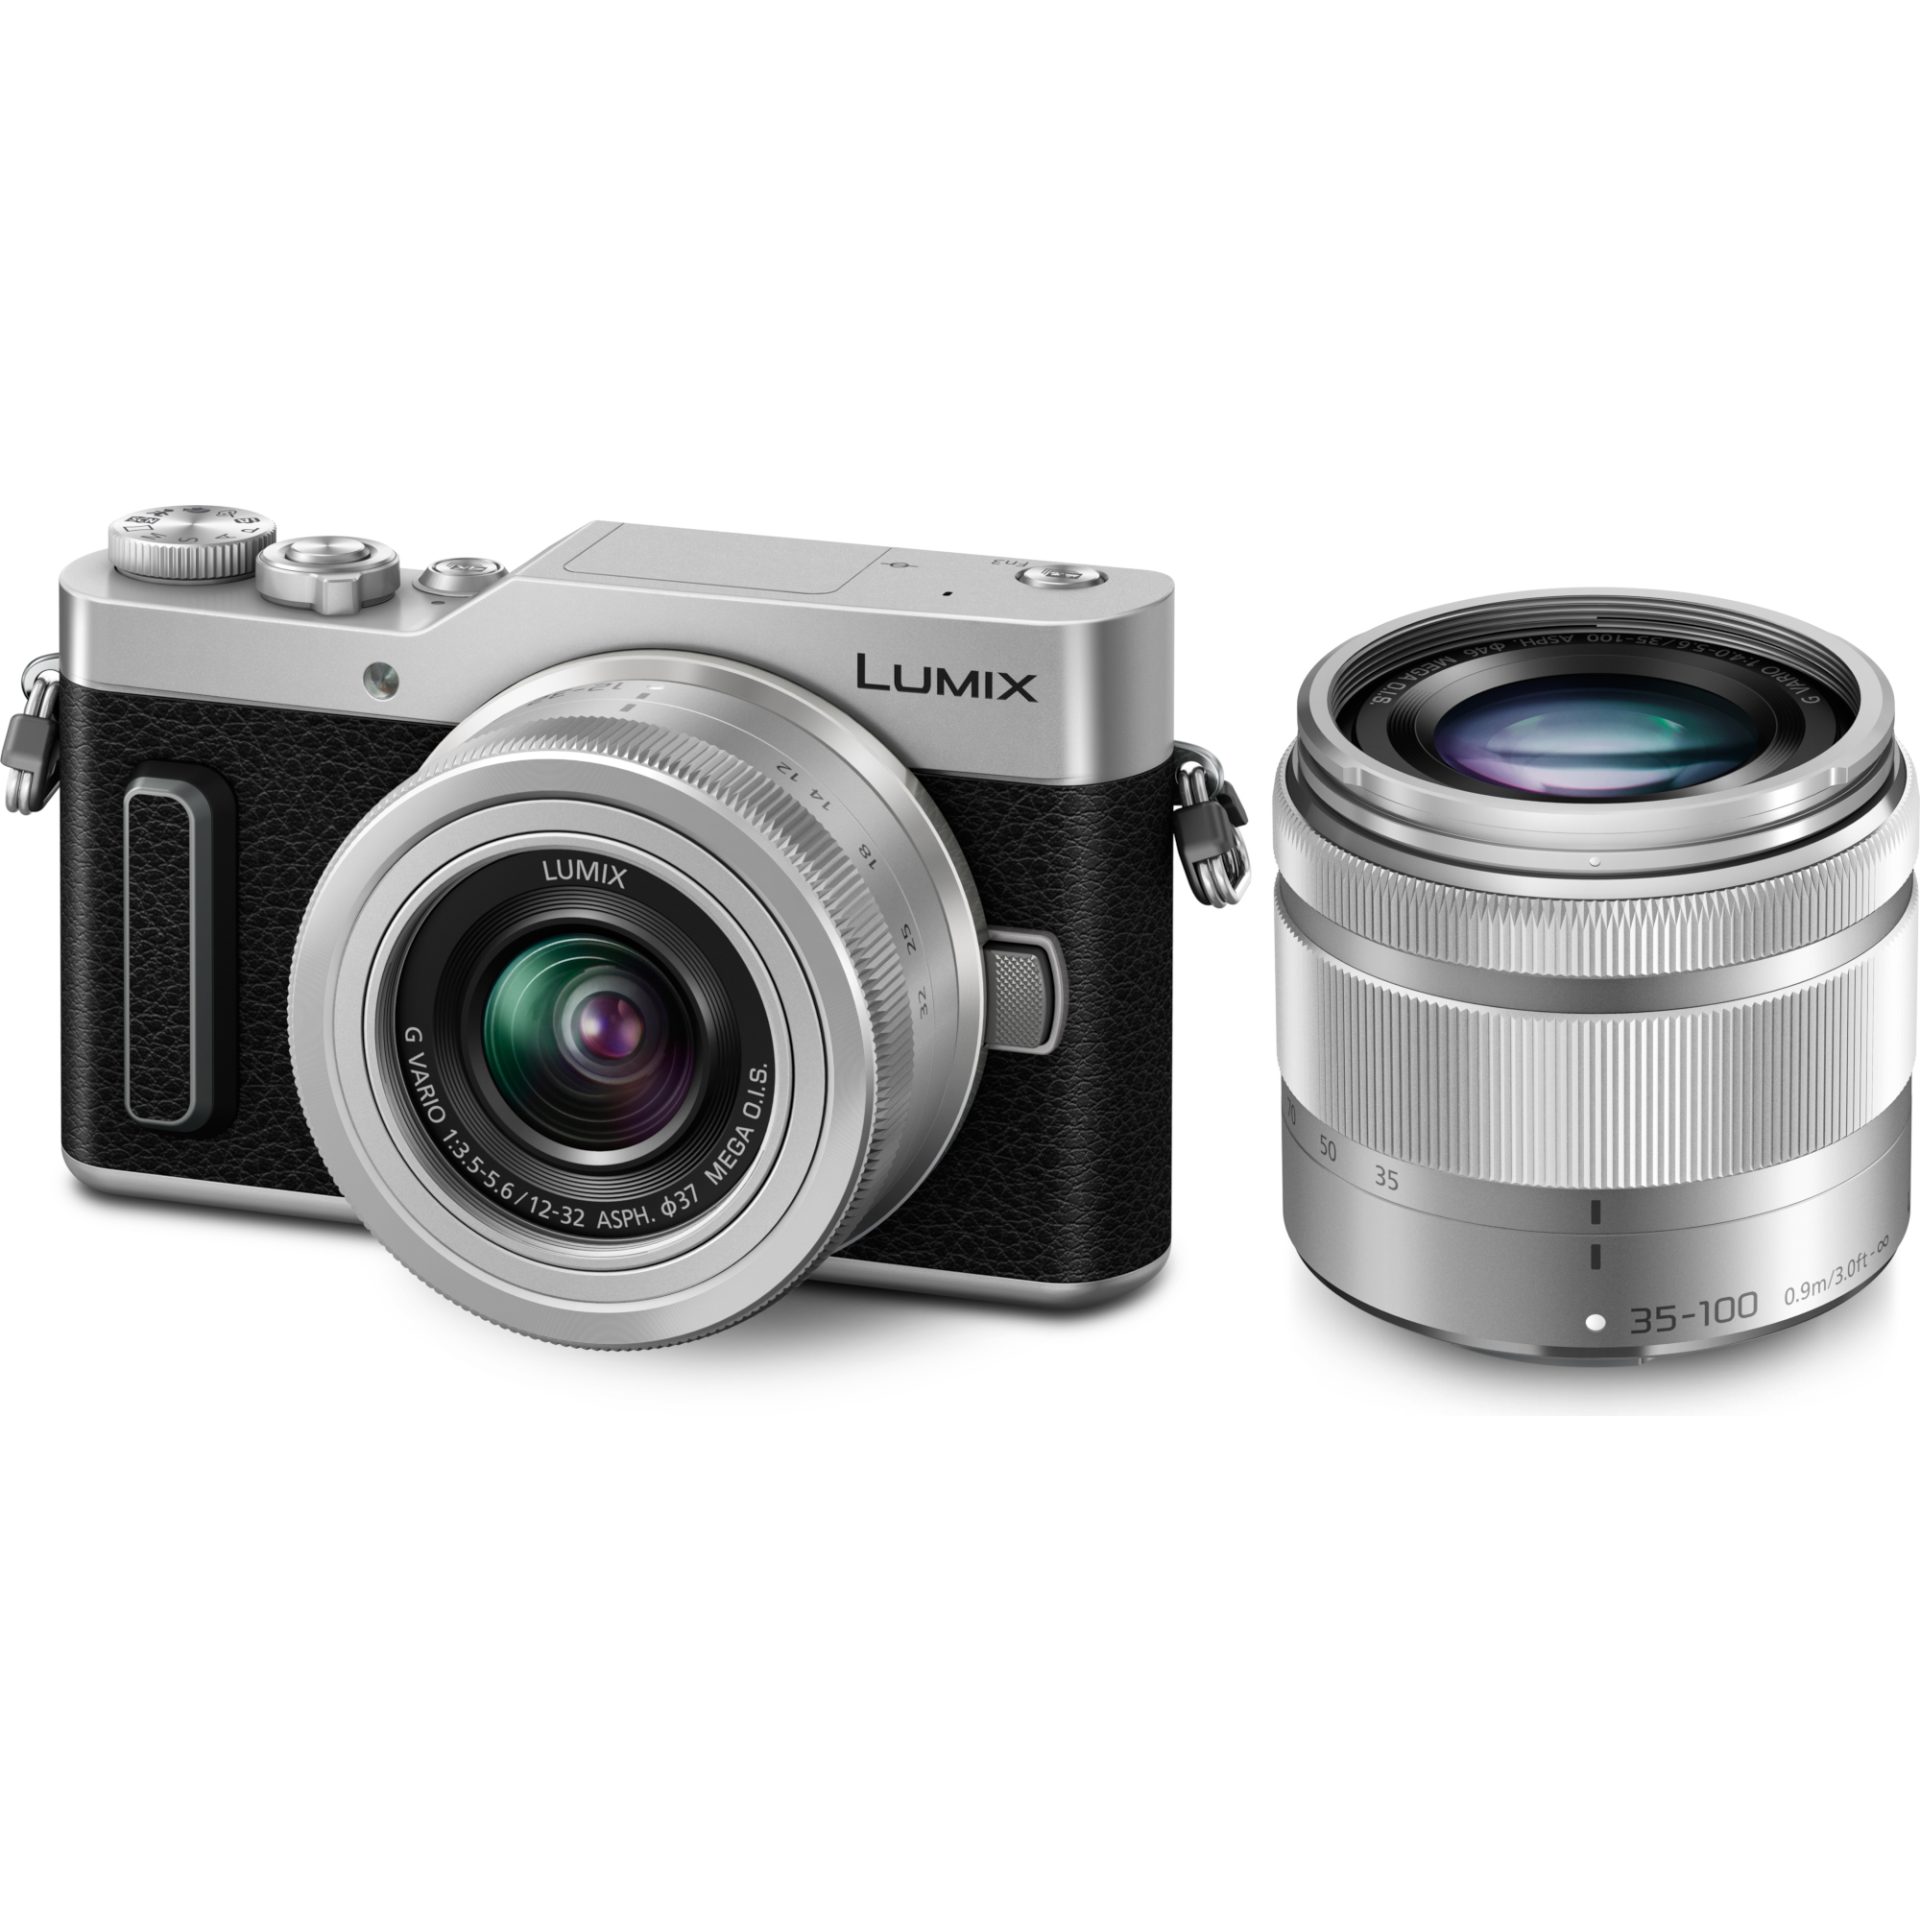 Panasonic DC-GX880W Lumix digitální fotoaparát pro blogery + H-FS12032 12-32mm, F3.5-5.6 + H-FS35100 35-100mm, F4.0-5.6 (4K fotografie, wi-fi), stříbr